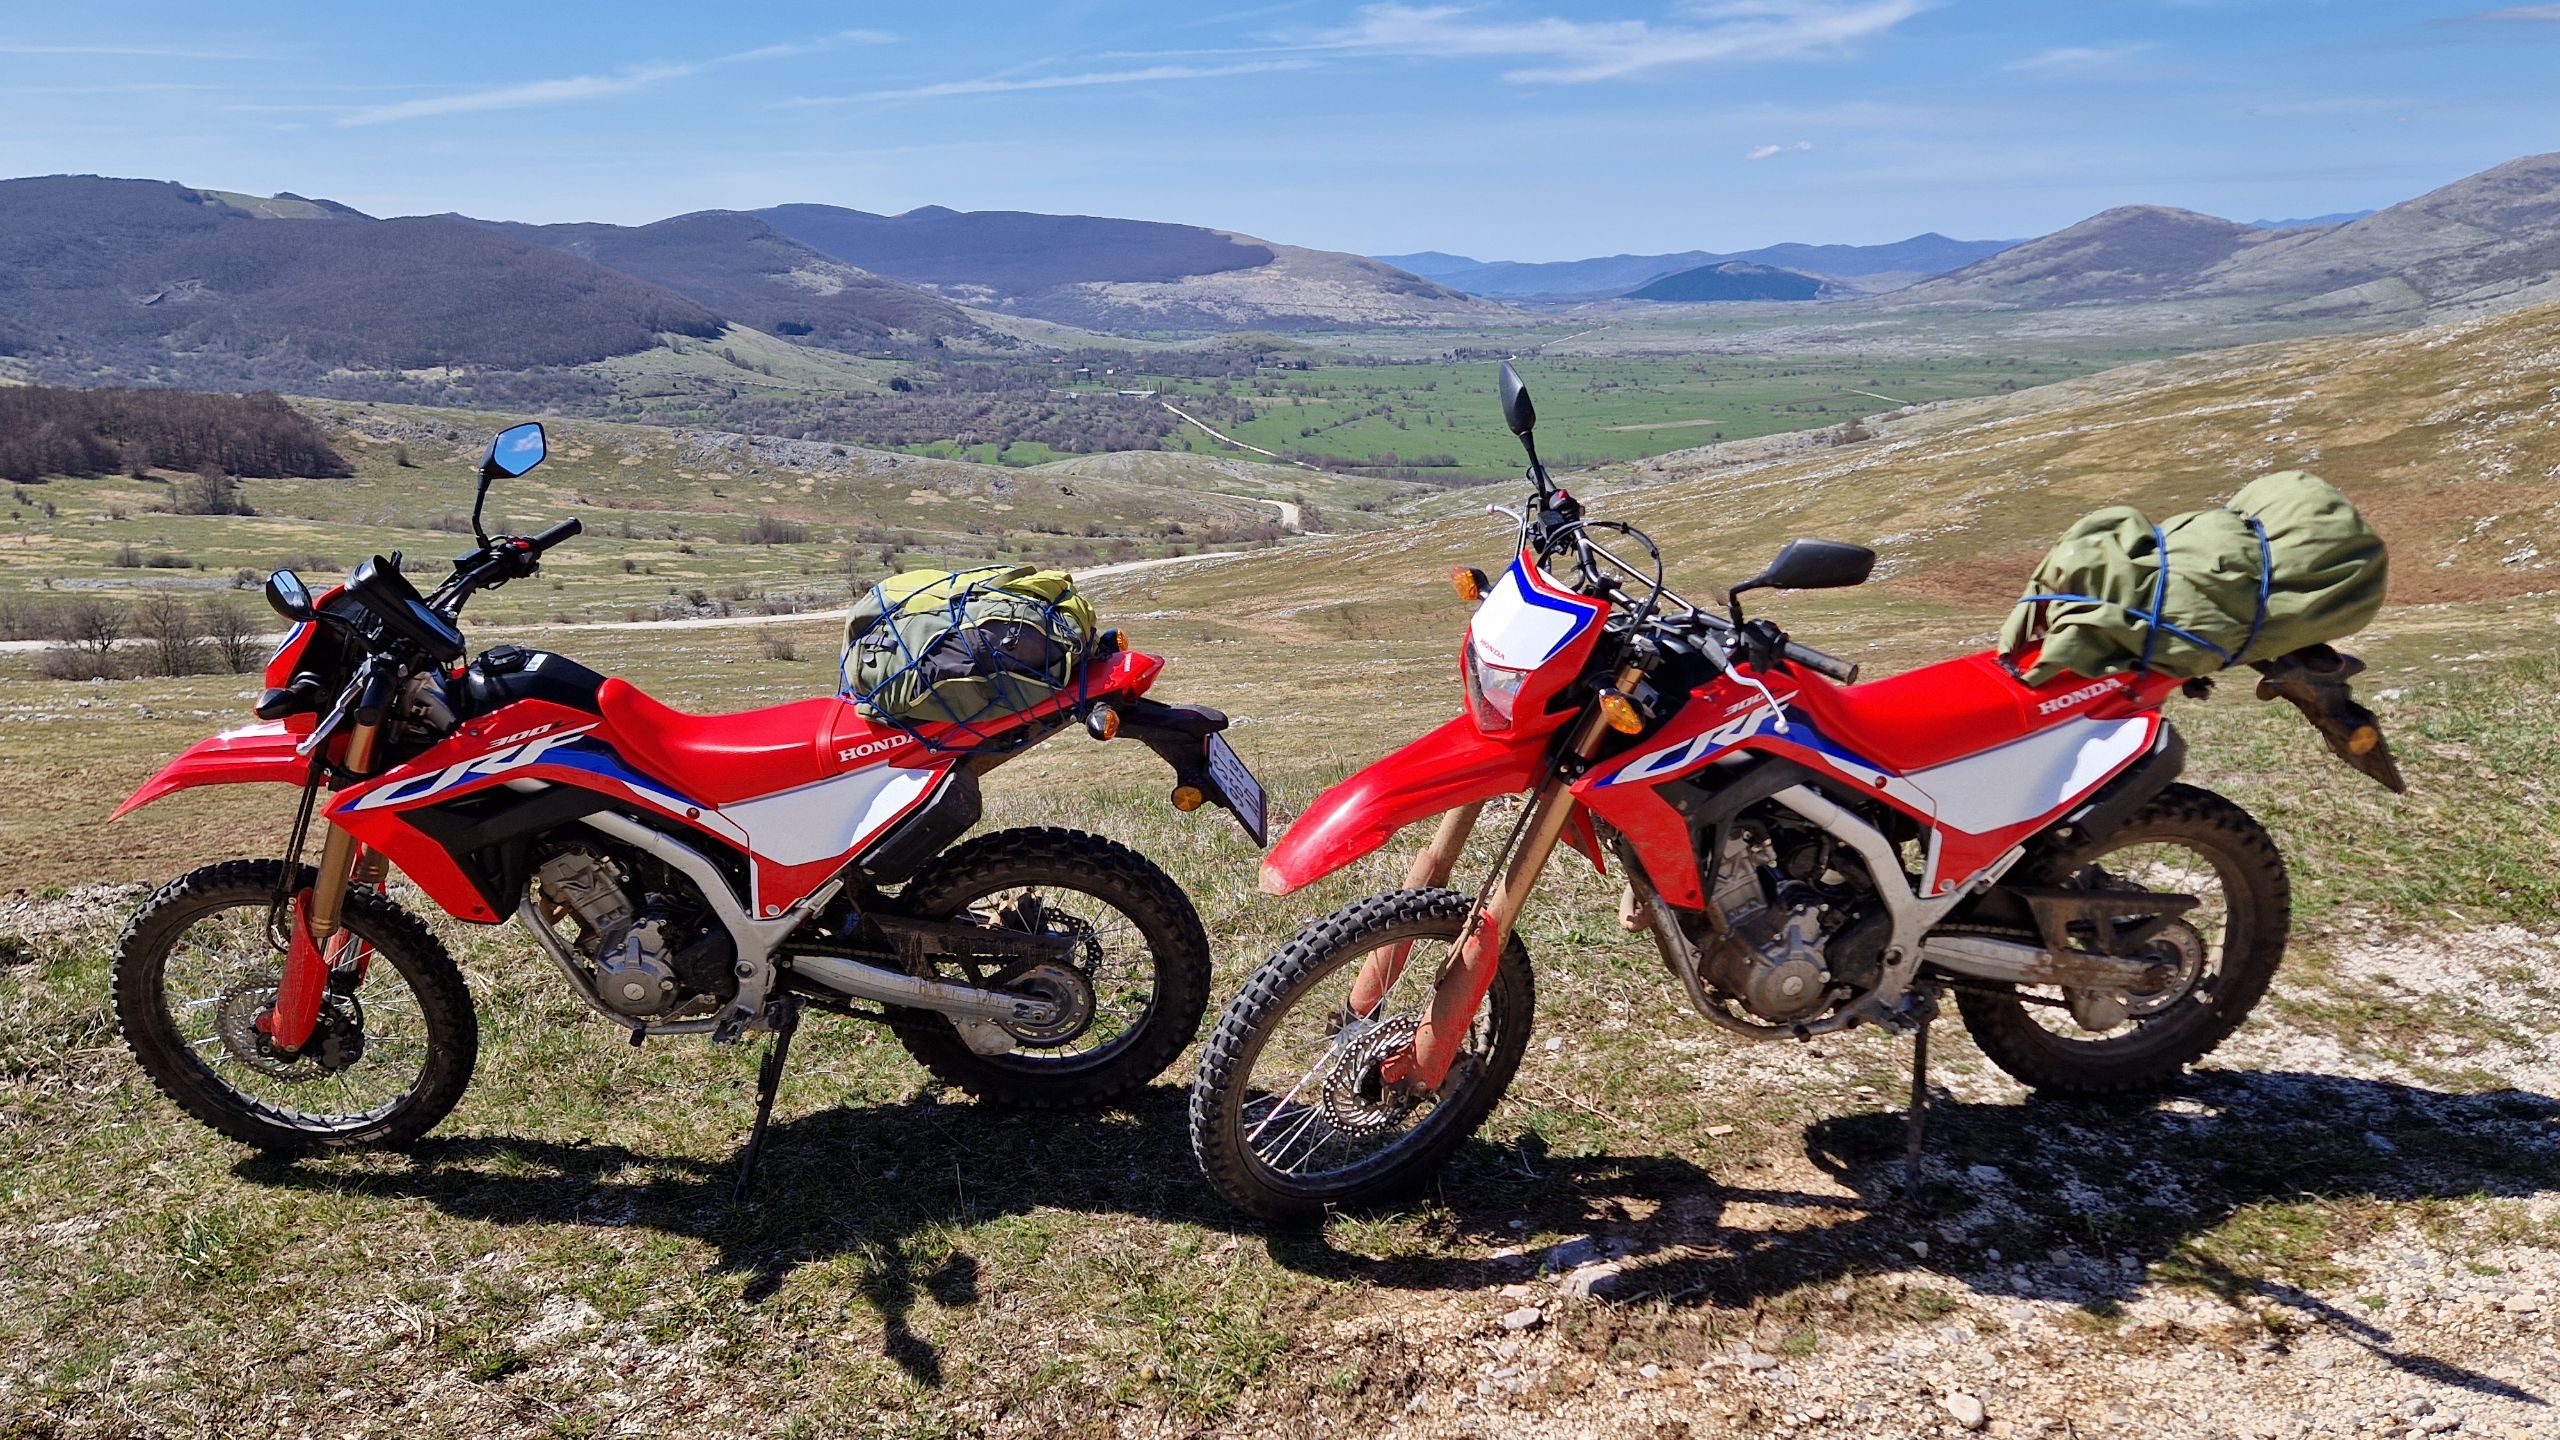 Funmoto ADVentures Croatia dualsport motorcycles for rent